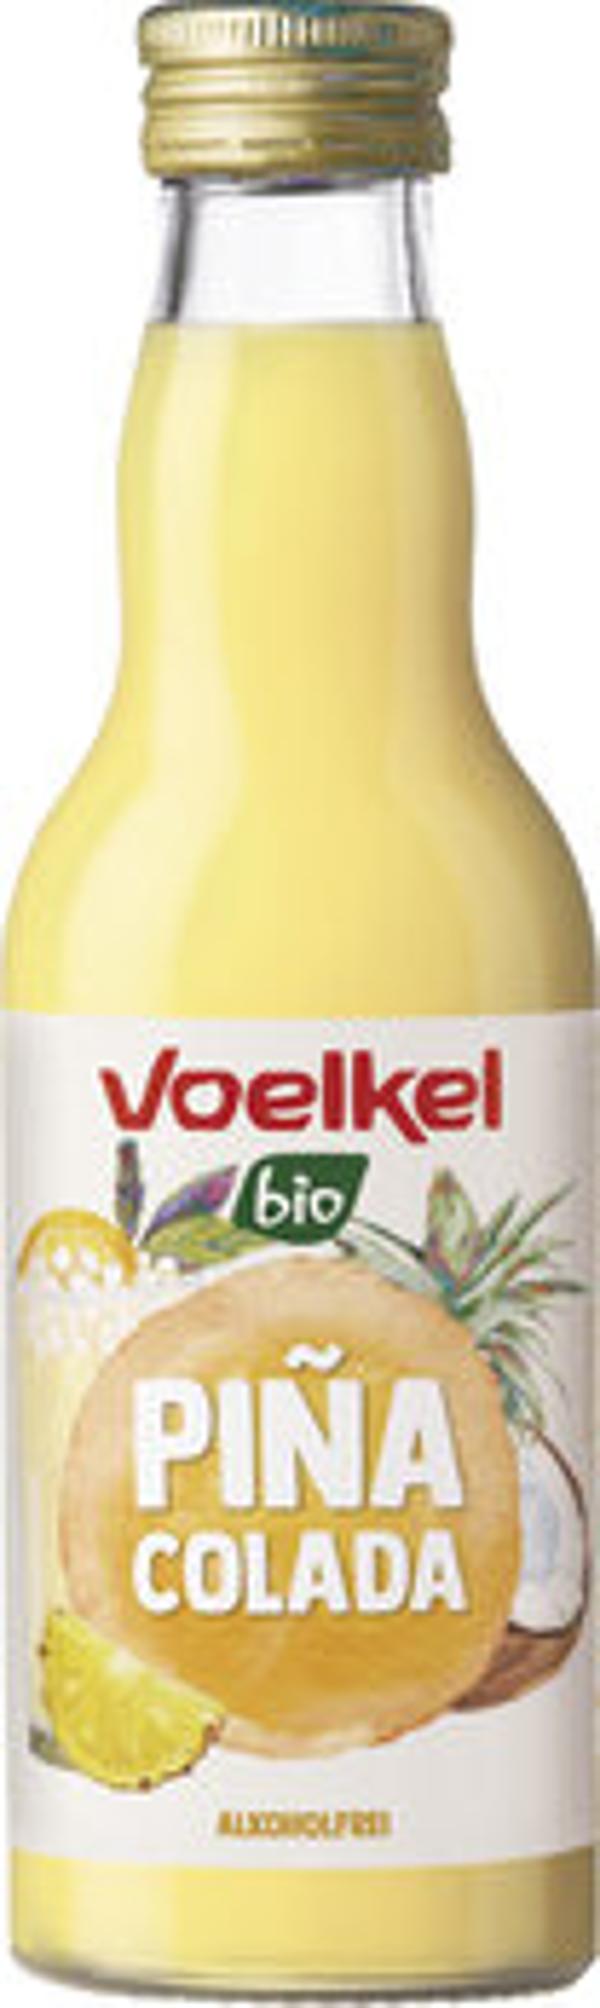 Produktfoto zu Voelkel Cocktail Pina Colada 0,2l